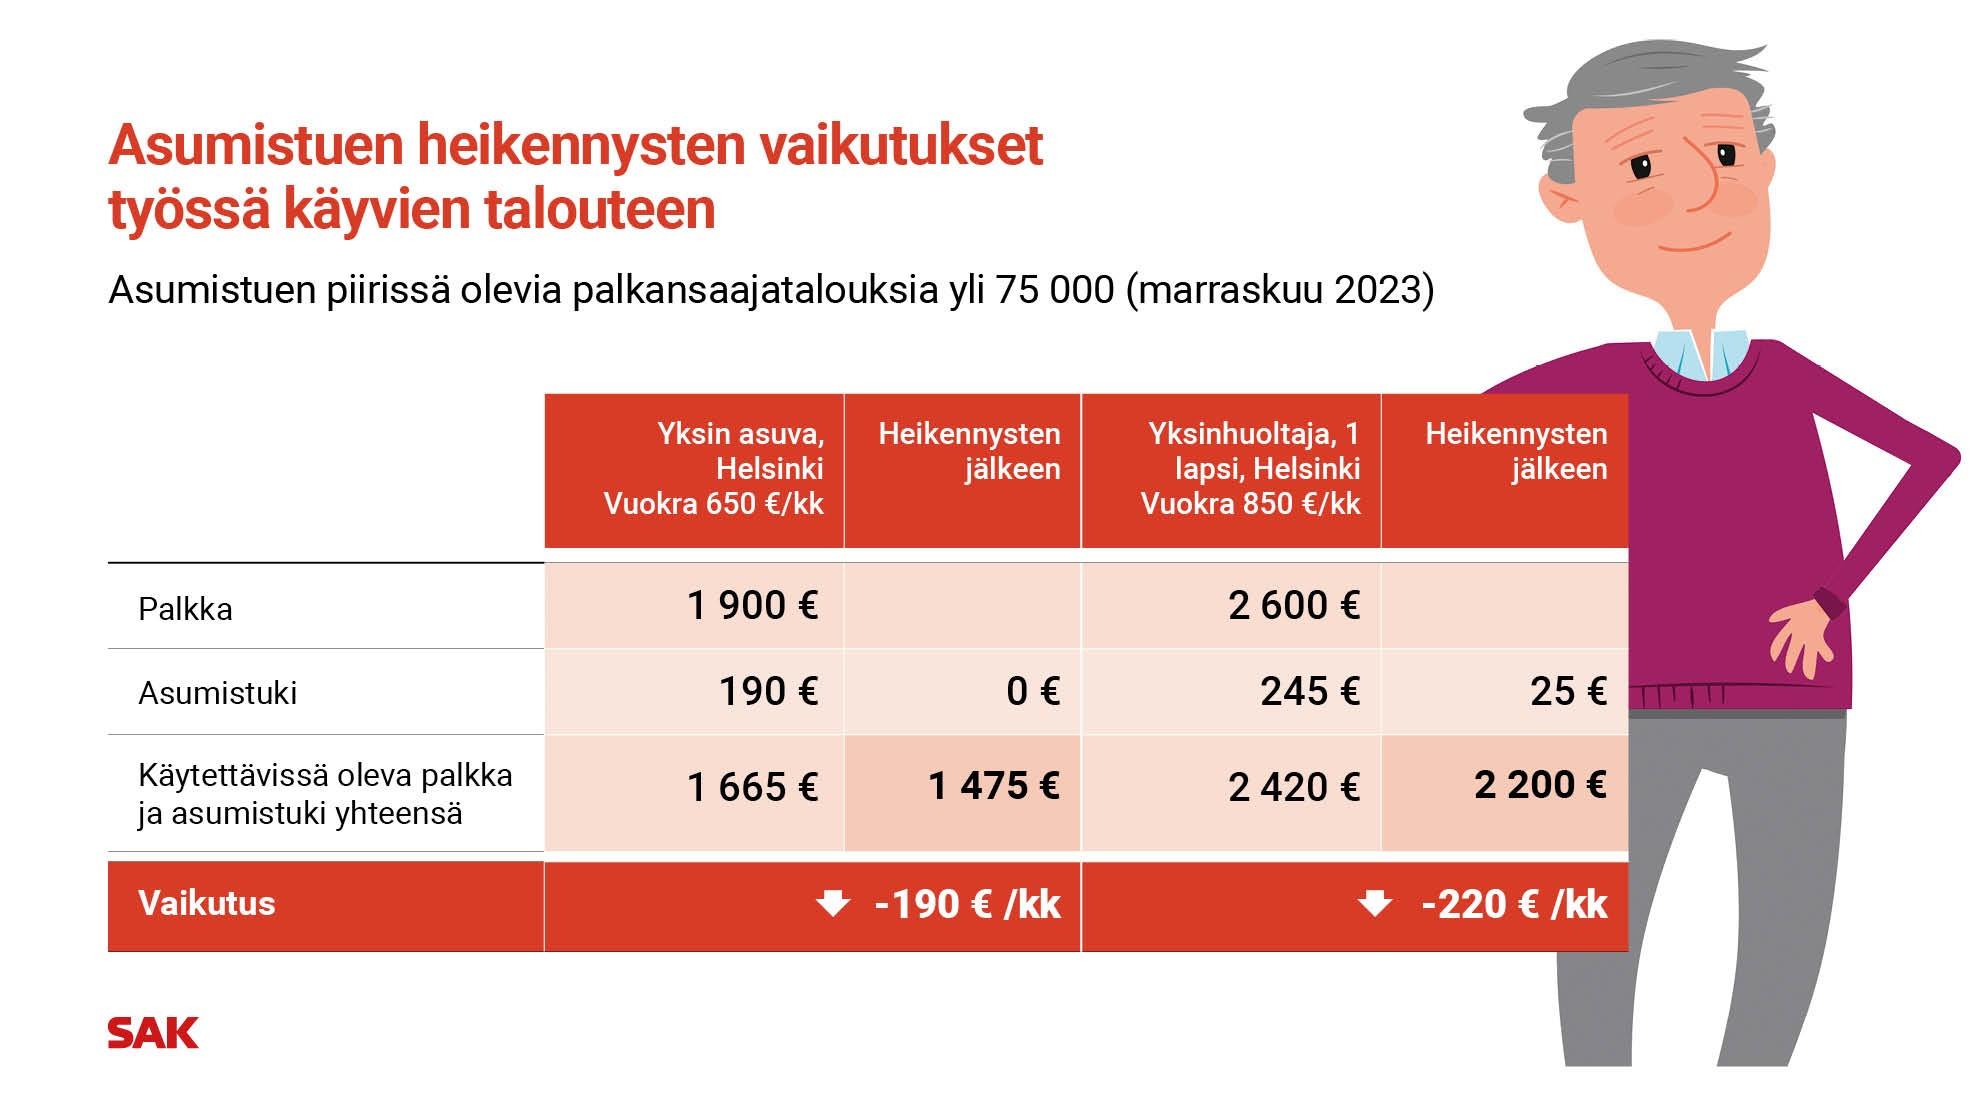 Kaaviosta käy ilmi, että Helsingissä yksin asuvan, 650 euroa kuukaudessa vuokraa maksavan ja 1900 euroa kuukaudessa ansaitsevan käytettävissä olevat tulot laskevat 190 euroa kuukaudessa. 2600 euroa kuukaudessa ansaitsevan ja 850 euron vuokraa maksavan yksinhuoltajan käytettävissä ole tulo laskee heikennysten jälkeen 220 euroa kuukaudessa.